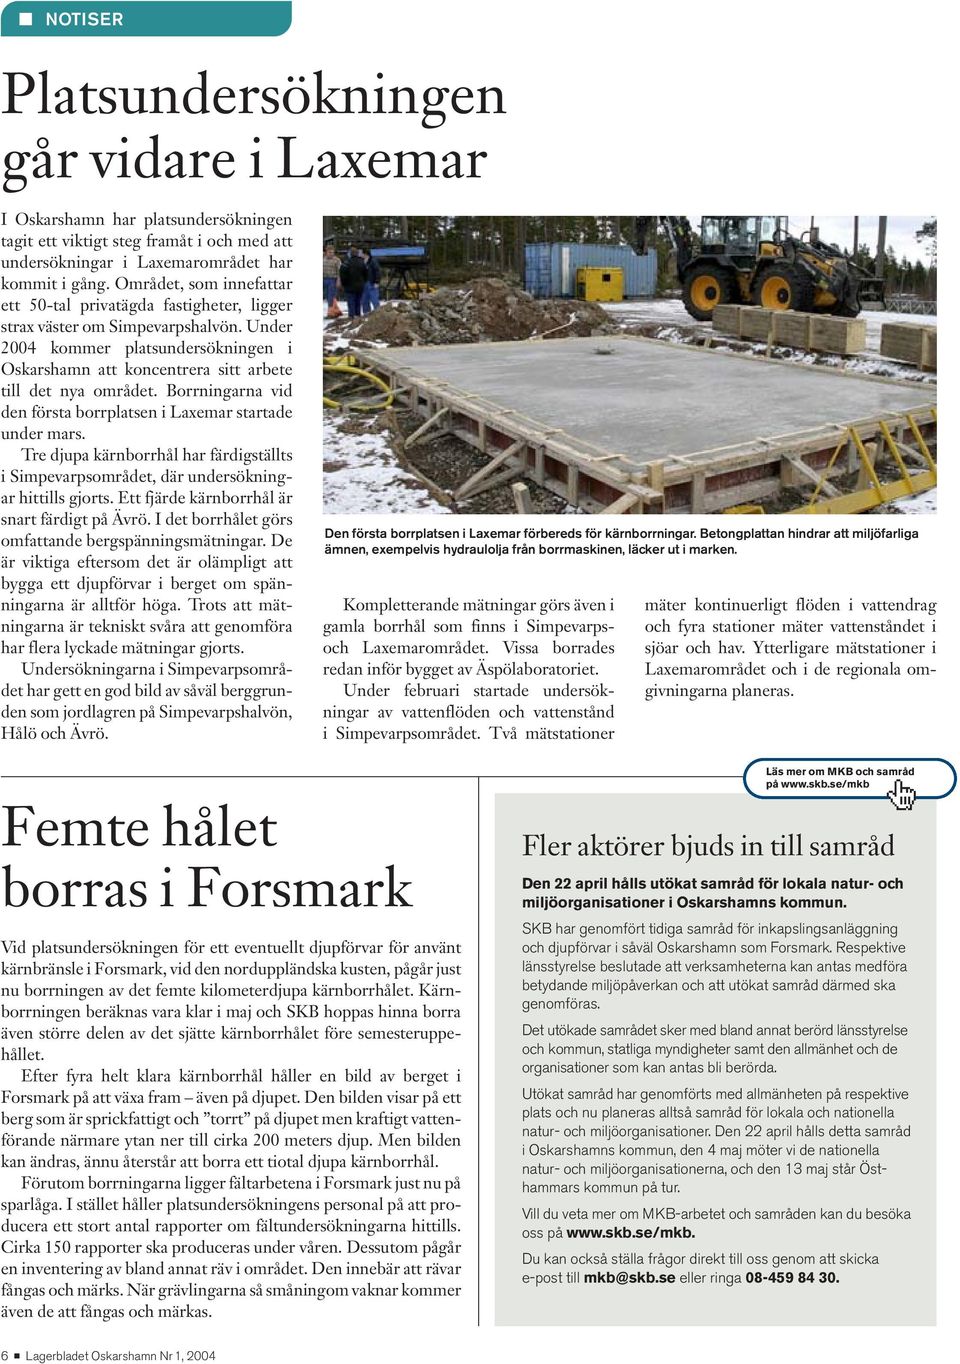 Under 2004 kommer platsundersökningen i Oskars hamn att koncentrera sitt arbete till det nya området. Borrningarna vid den första borrplatsen i Laxemar startade under mars.